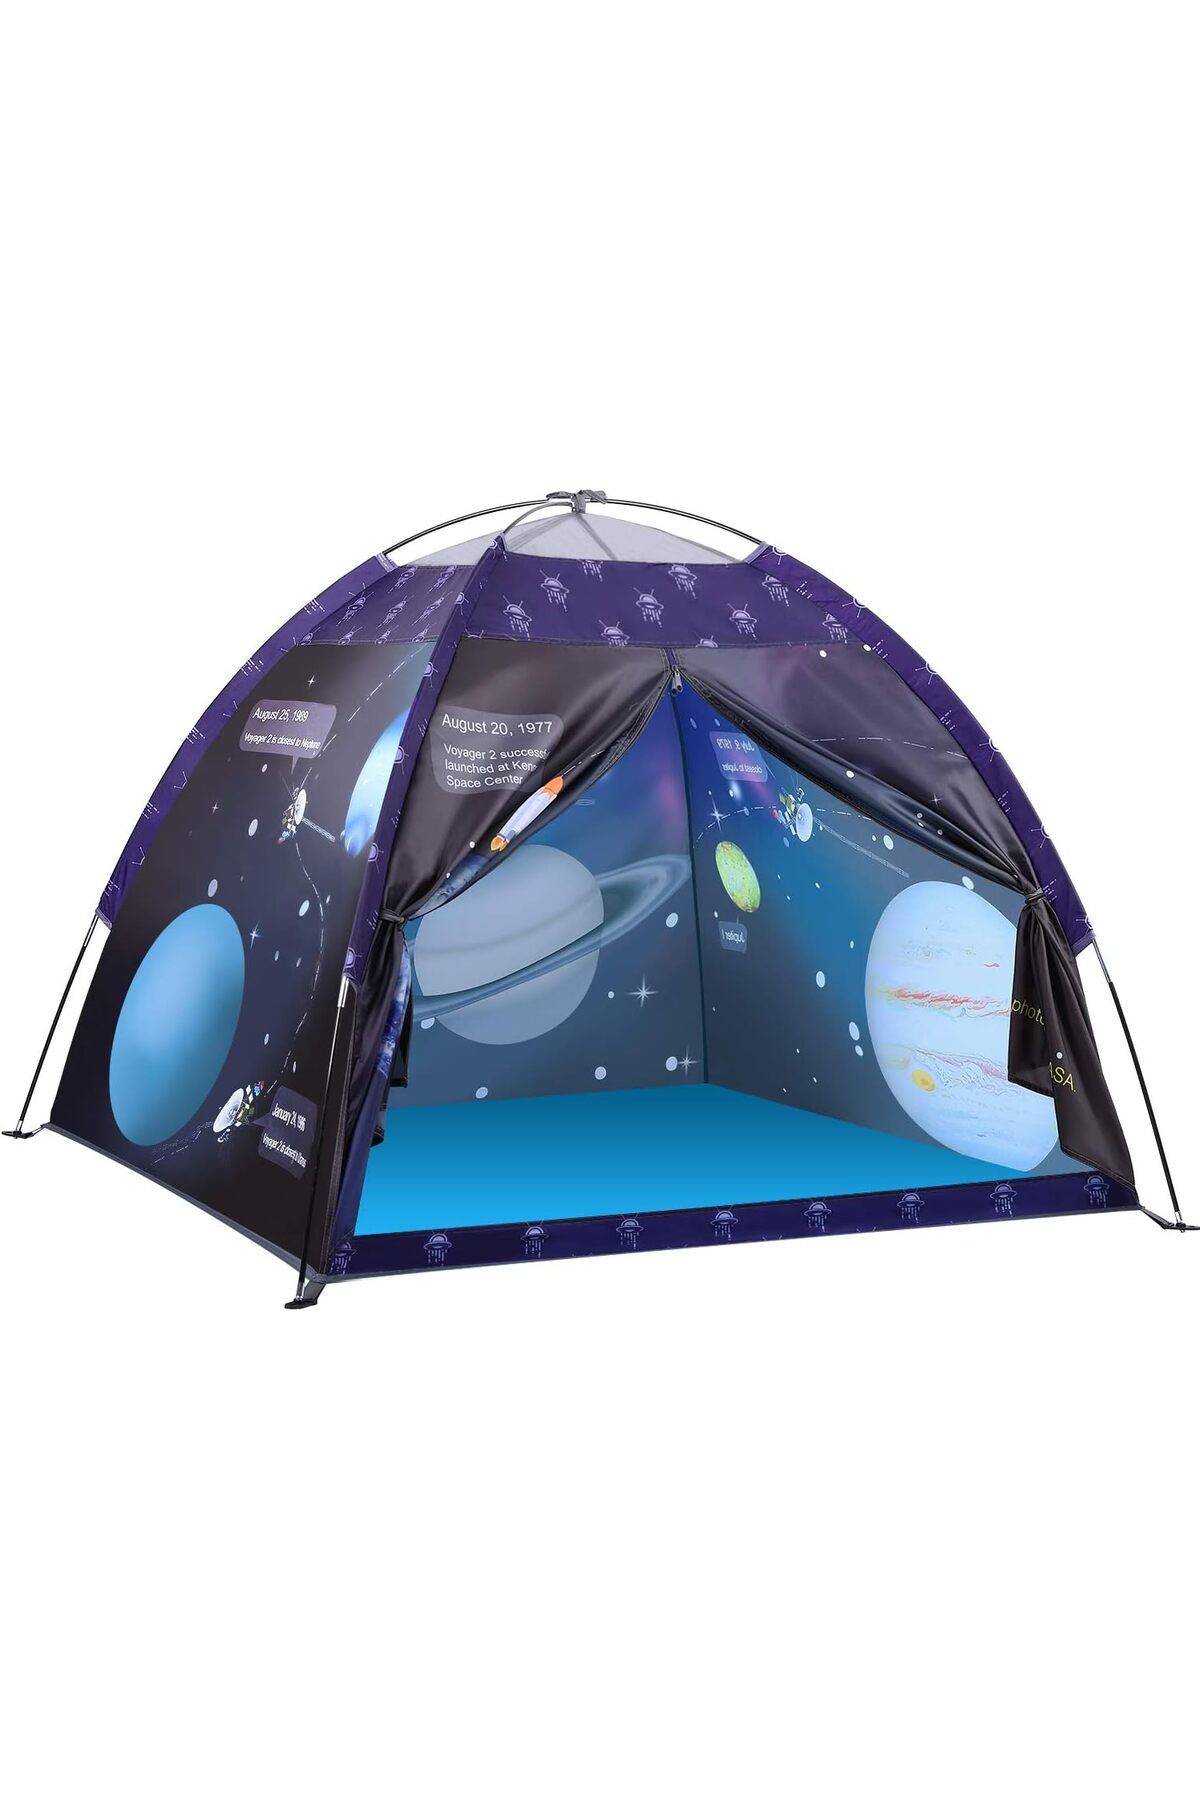 Exqline Çocuk çadırı,Galaxis oyun çadırı, erkek ve kız çocukları için, açılır çocuk çadırı